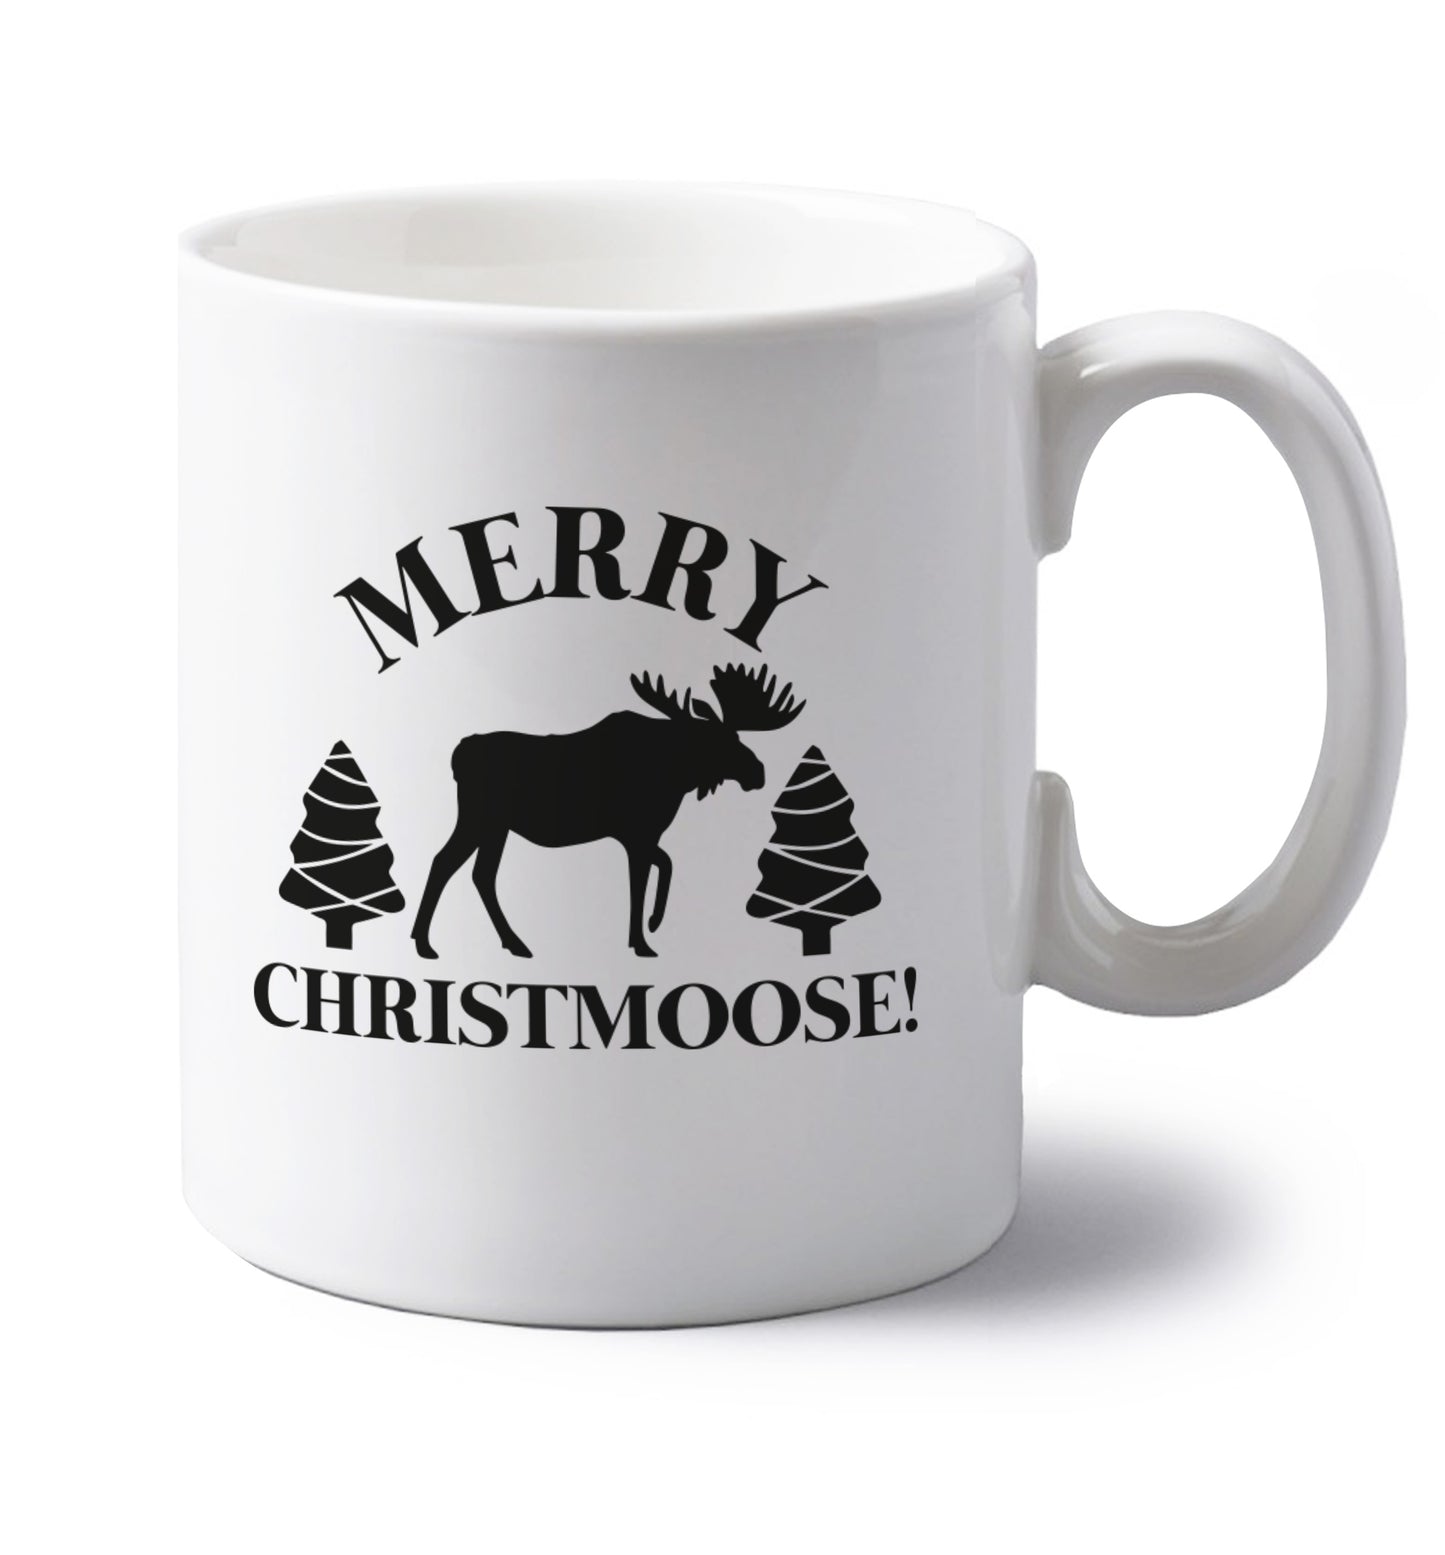 Merry Christmoose left handed white ceramic mug 